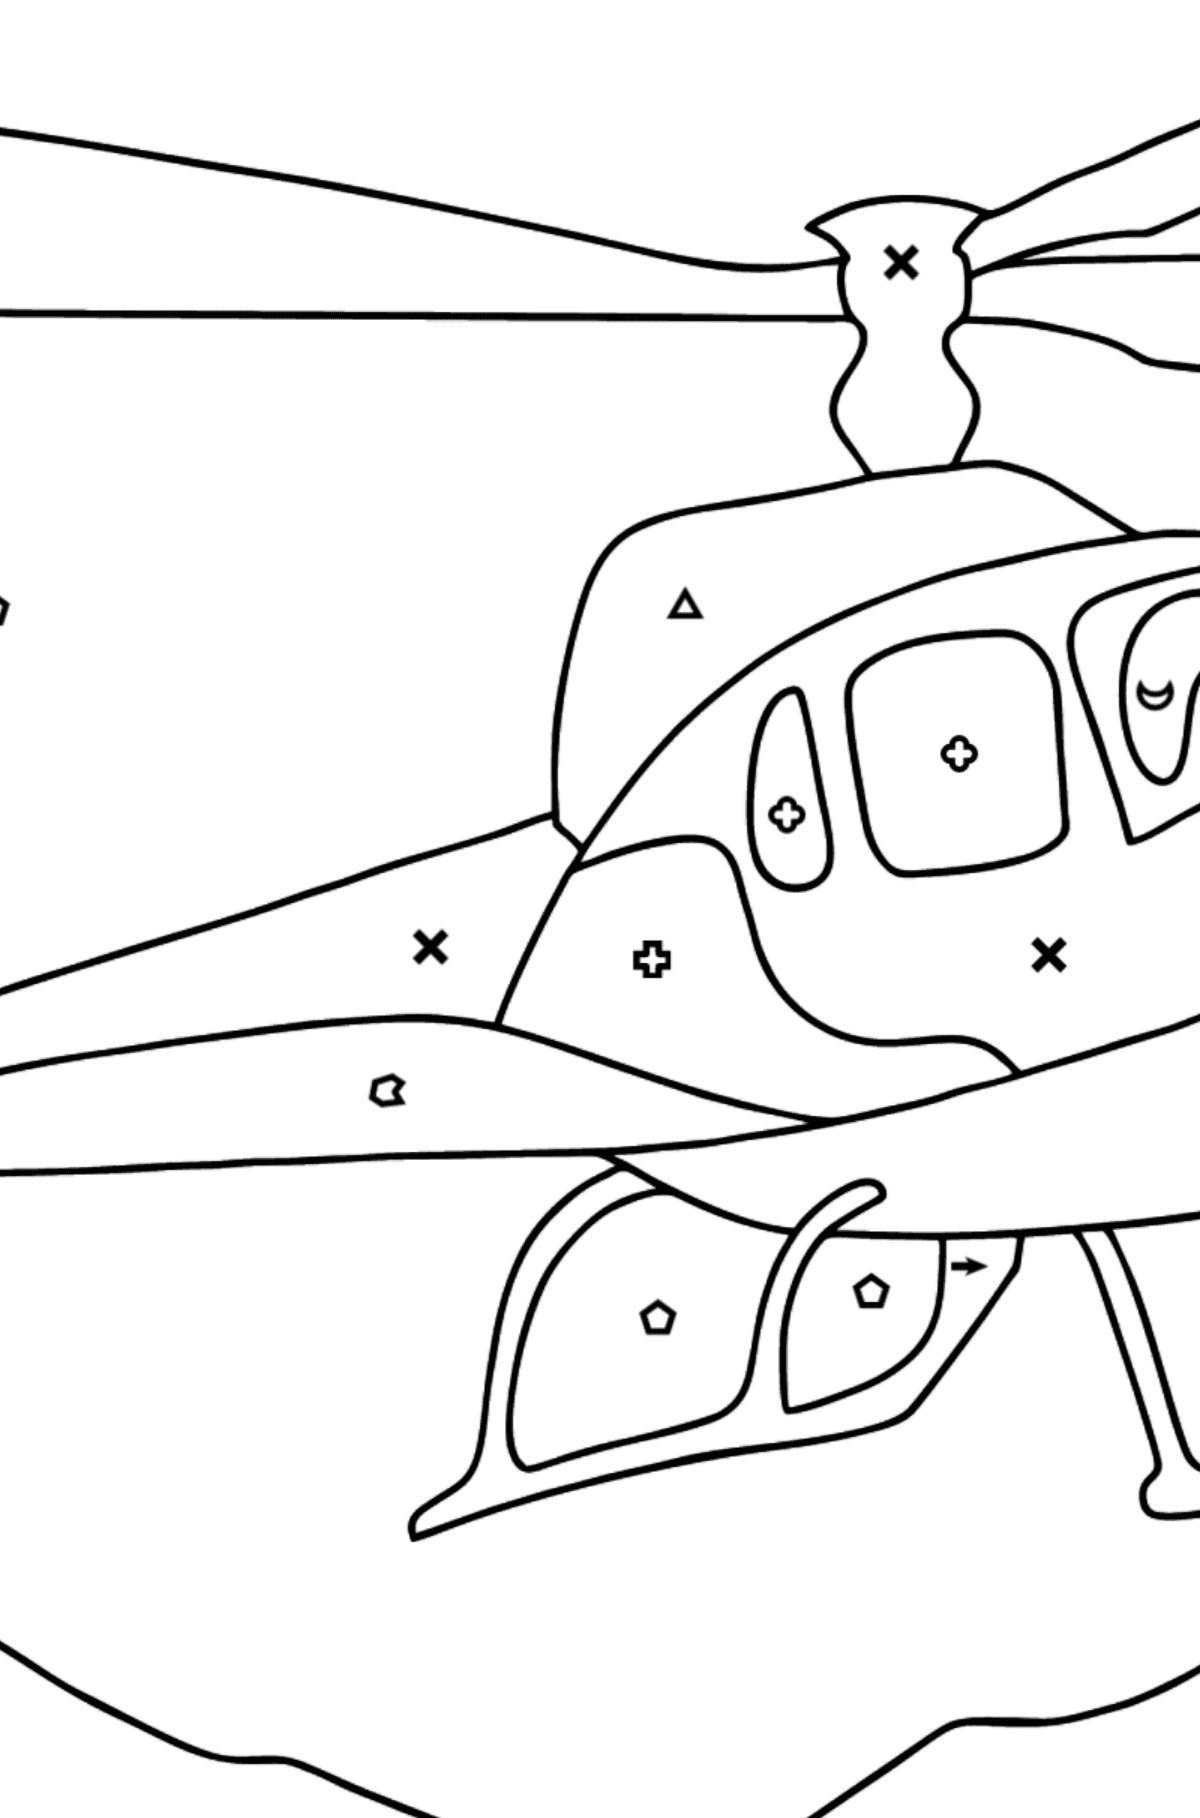 Dibujo para Colorear - Un Helicóptero de Ciudad - Colorear por Símbolos para Niños